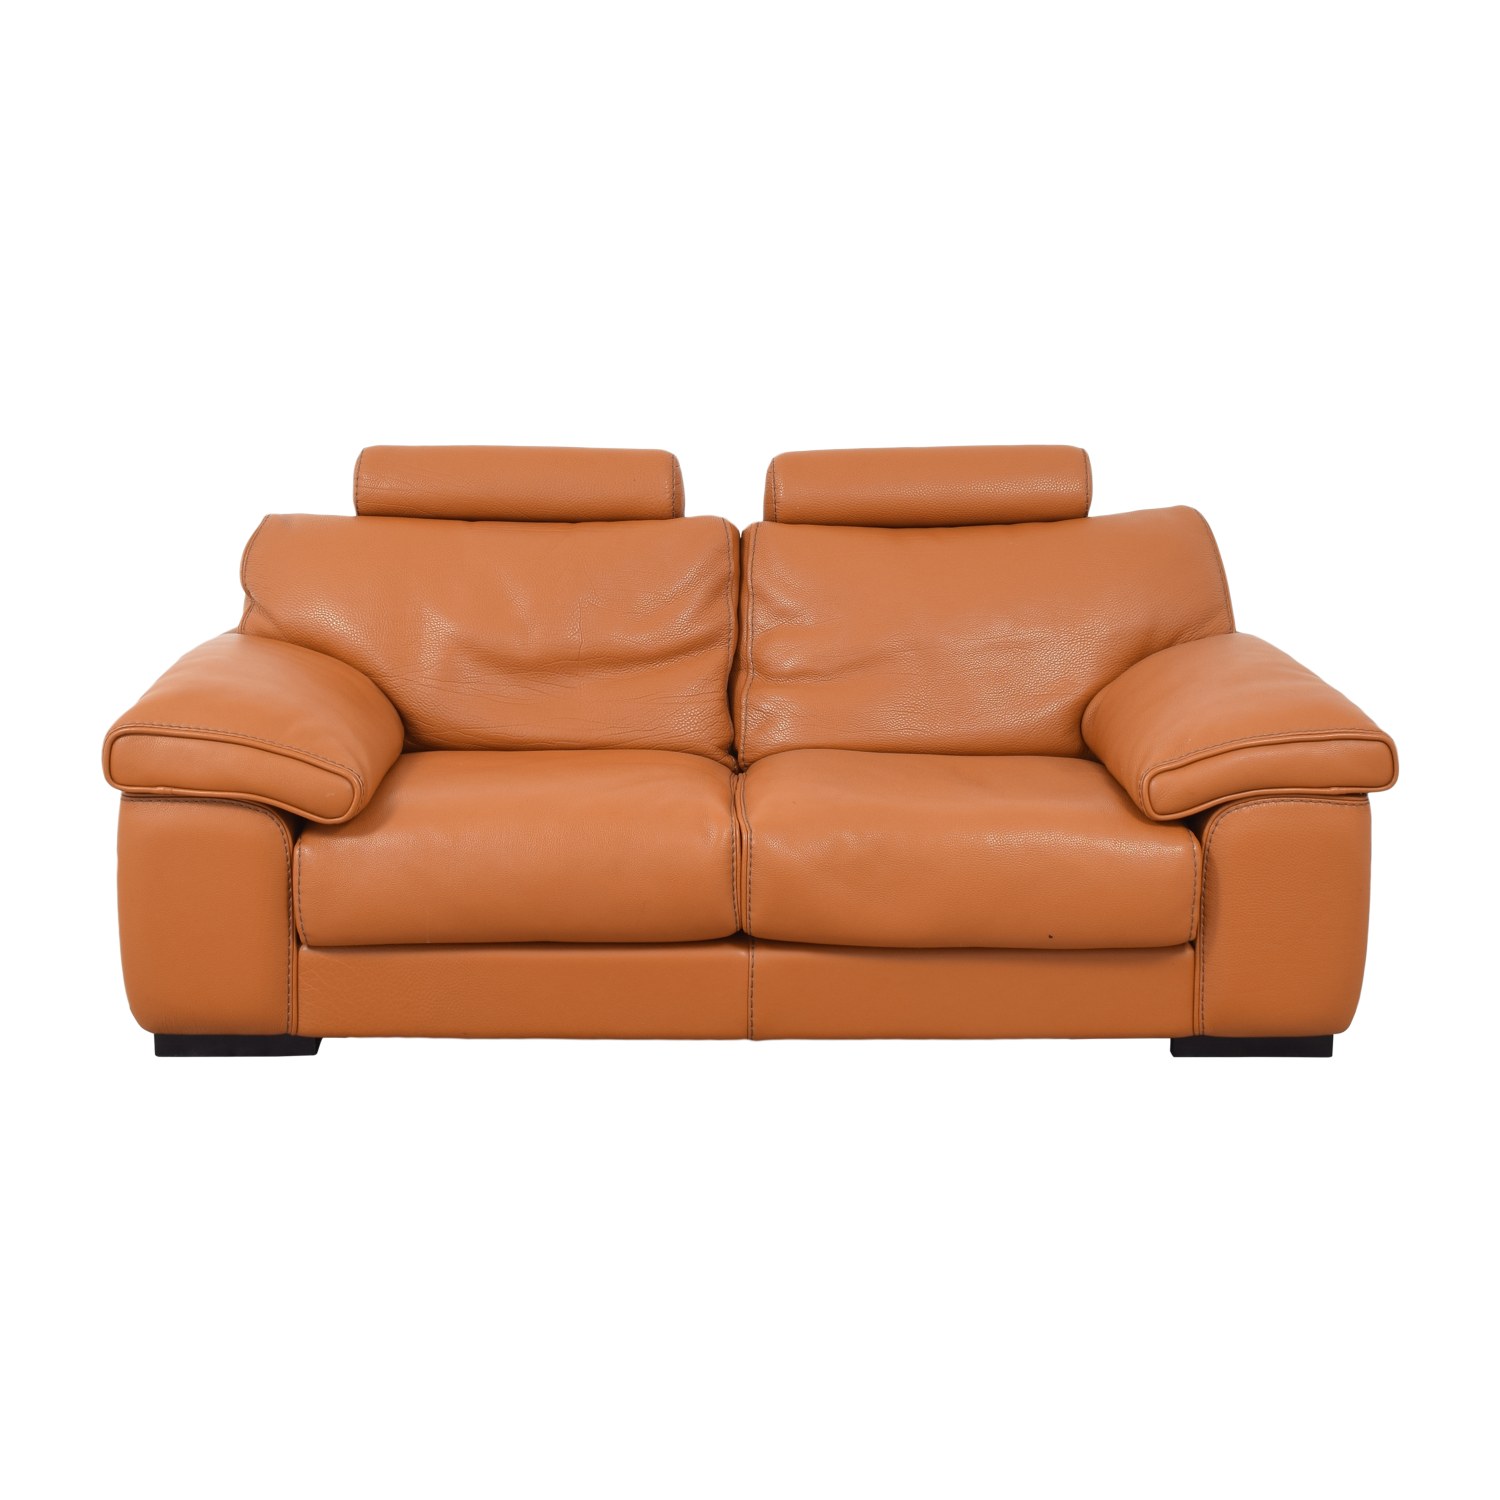 Roche Bobois Two Cushion Sofa | 58% Off | Kaiyo